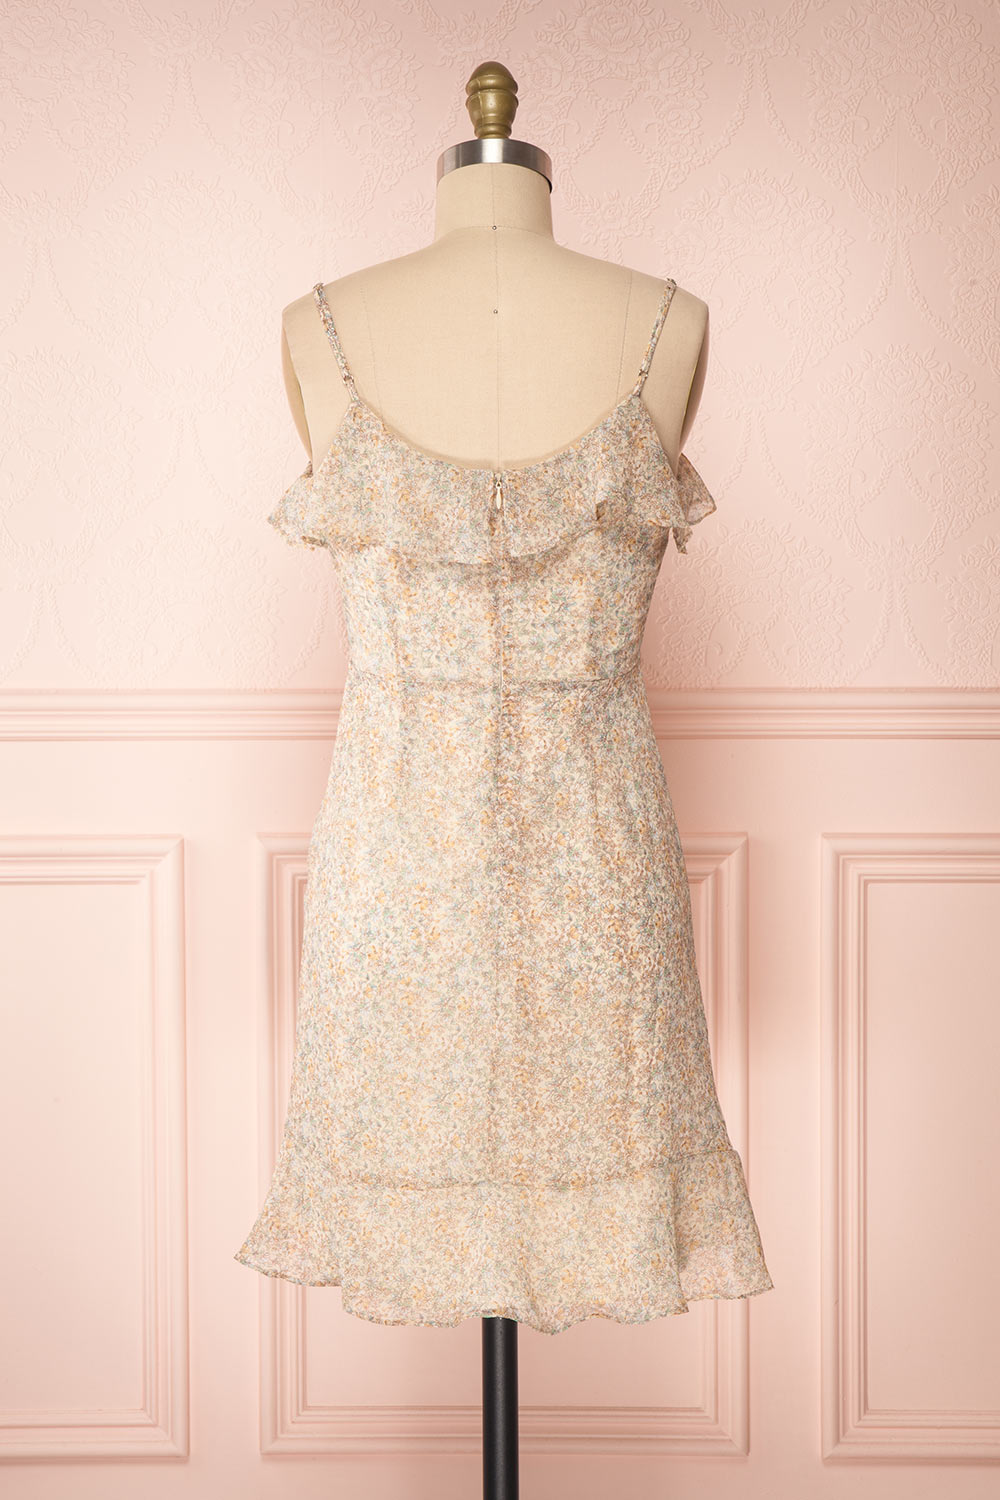 Petrona Beige Floral Chiffon Short Dress back view | Boutique 1861